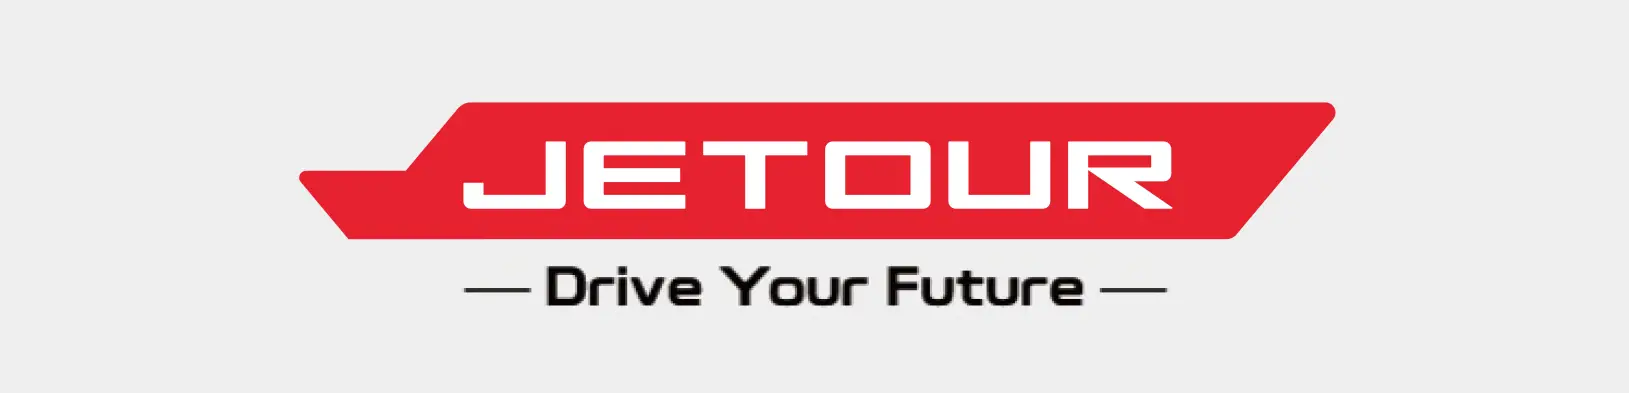 Jetour Logo with Tagline